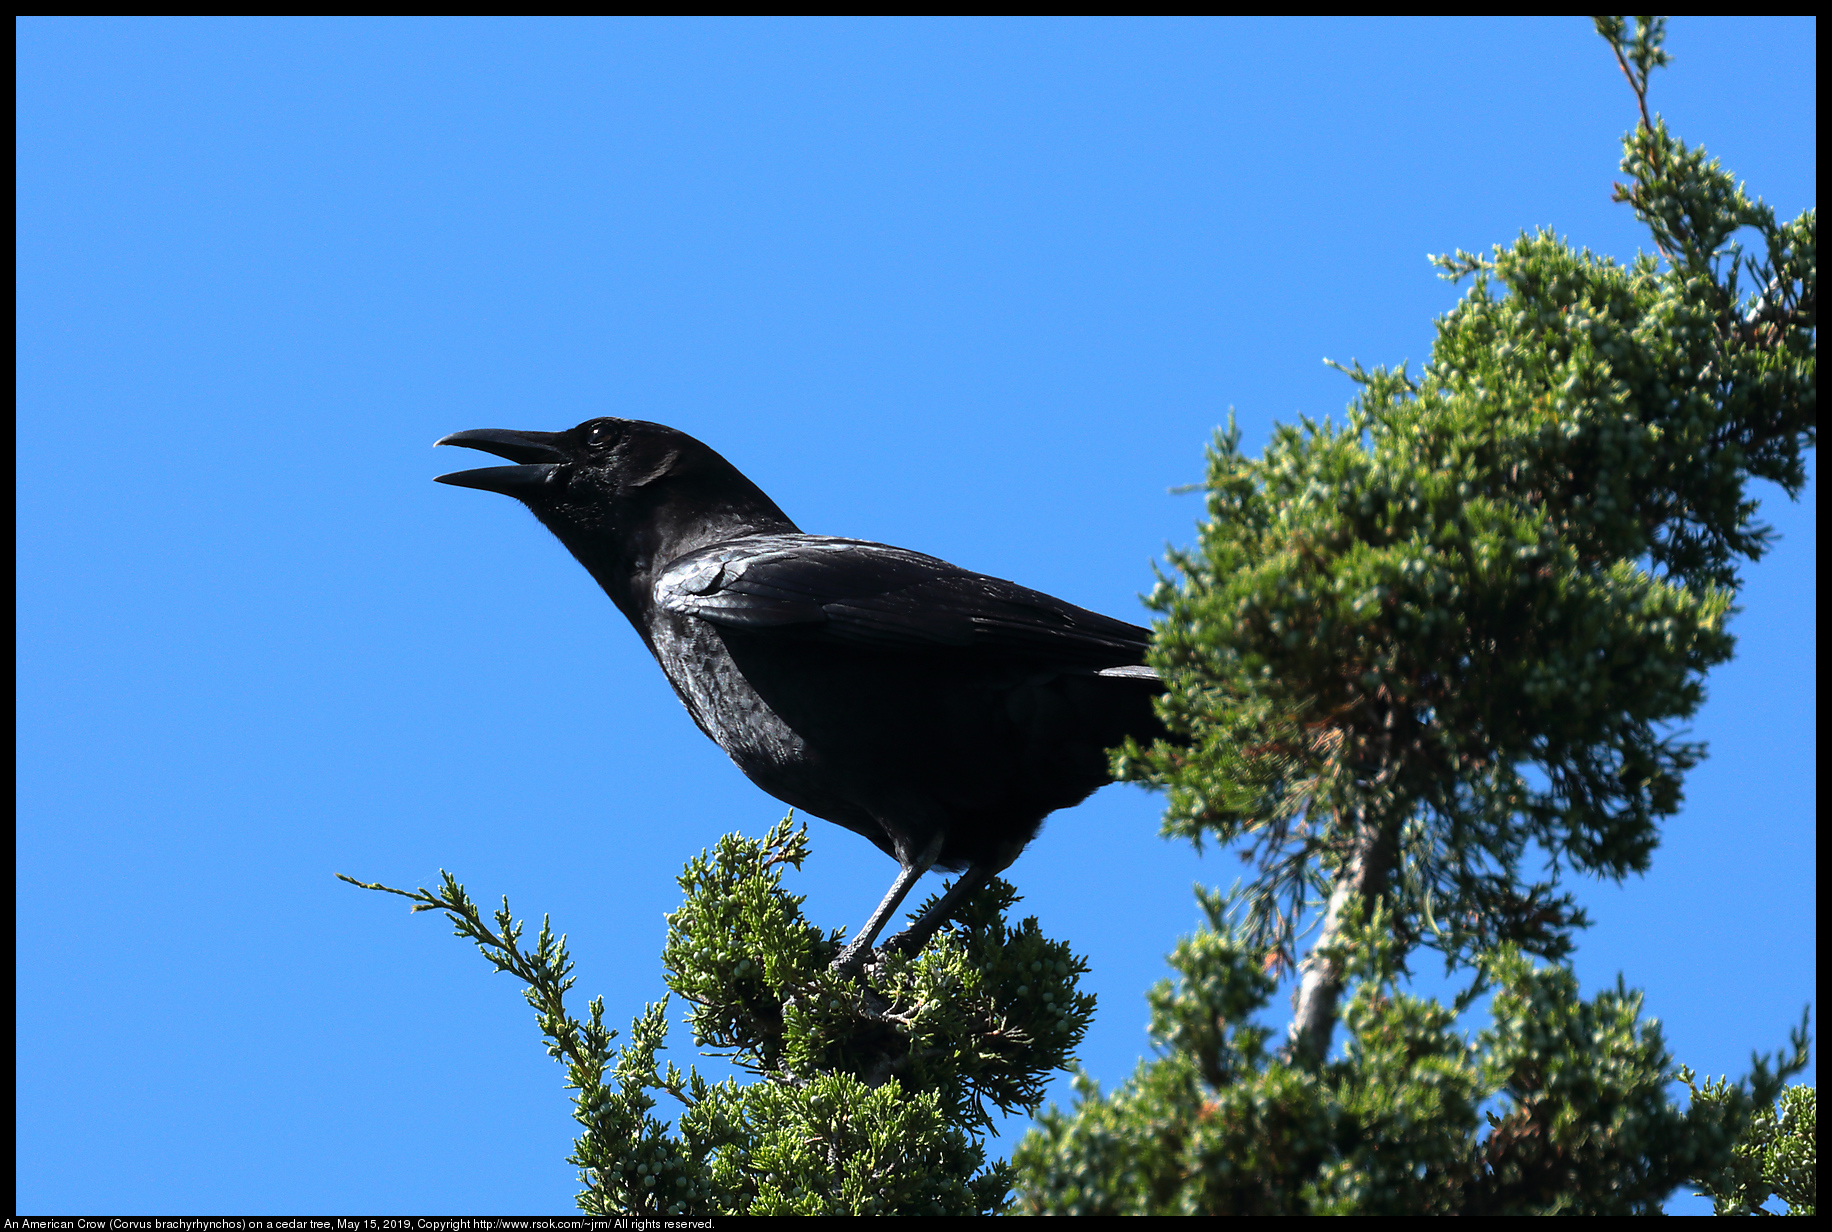 An American Crow (Corvus brachyrhynchos) on a cedar tree, May 15, 2019